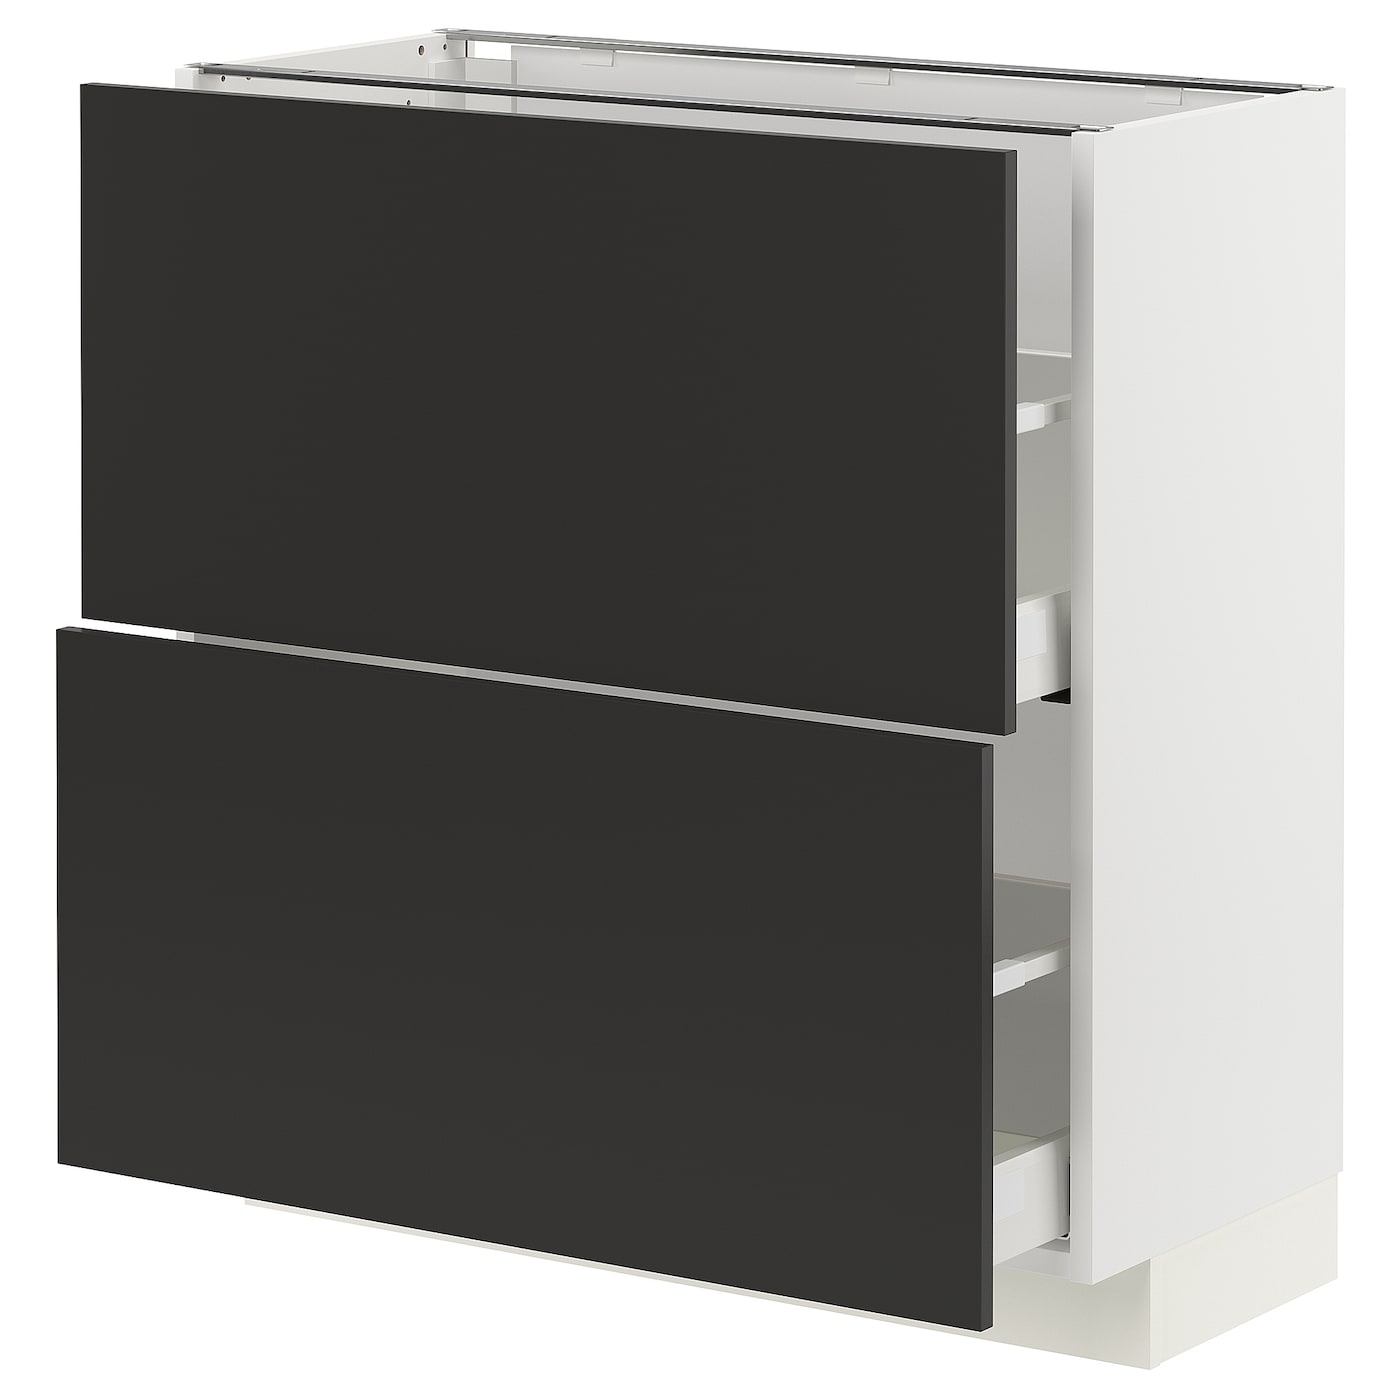 Напольный шкаф - IKEA METOD MAXIMERA, 88x39x80см, черный/белый, МЕТОД МАКСИМЕРА ИКЕА